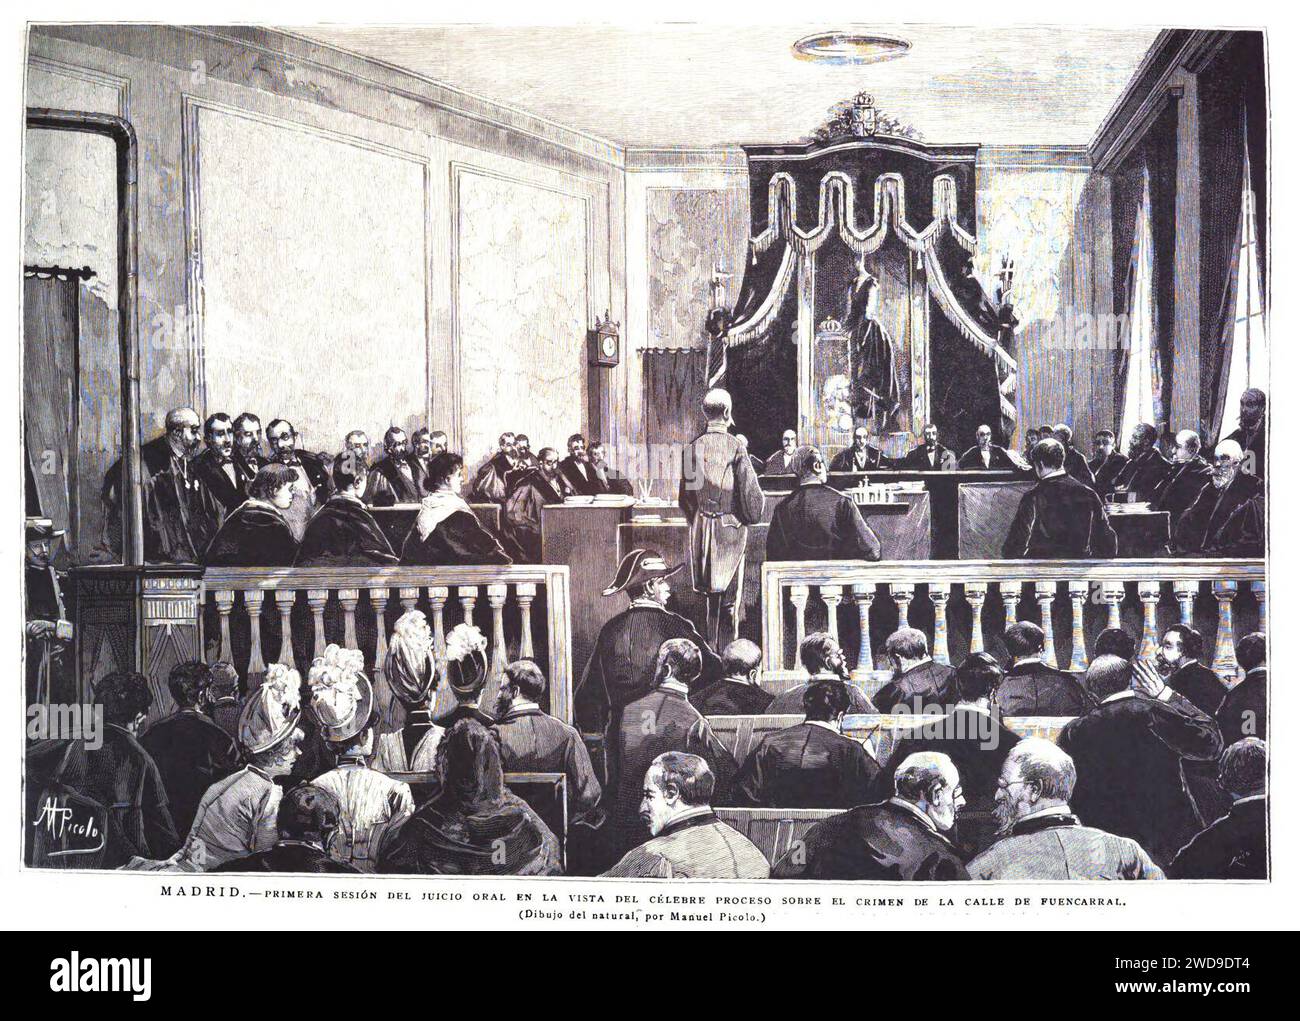 1889-03-30, La Ilustración Española y Americana, Madrid.—Primera sesión del juicio oral en la vista del célebre proceso sobre el crimen de la calle de Fuencarral. Stock Photo